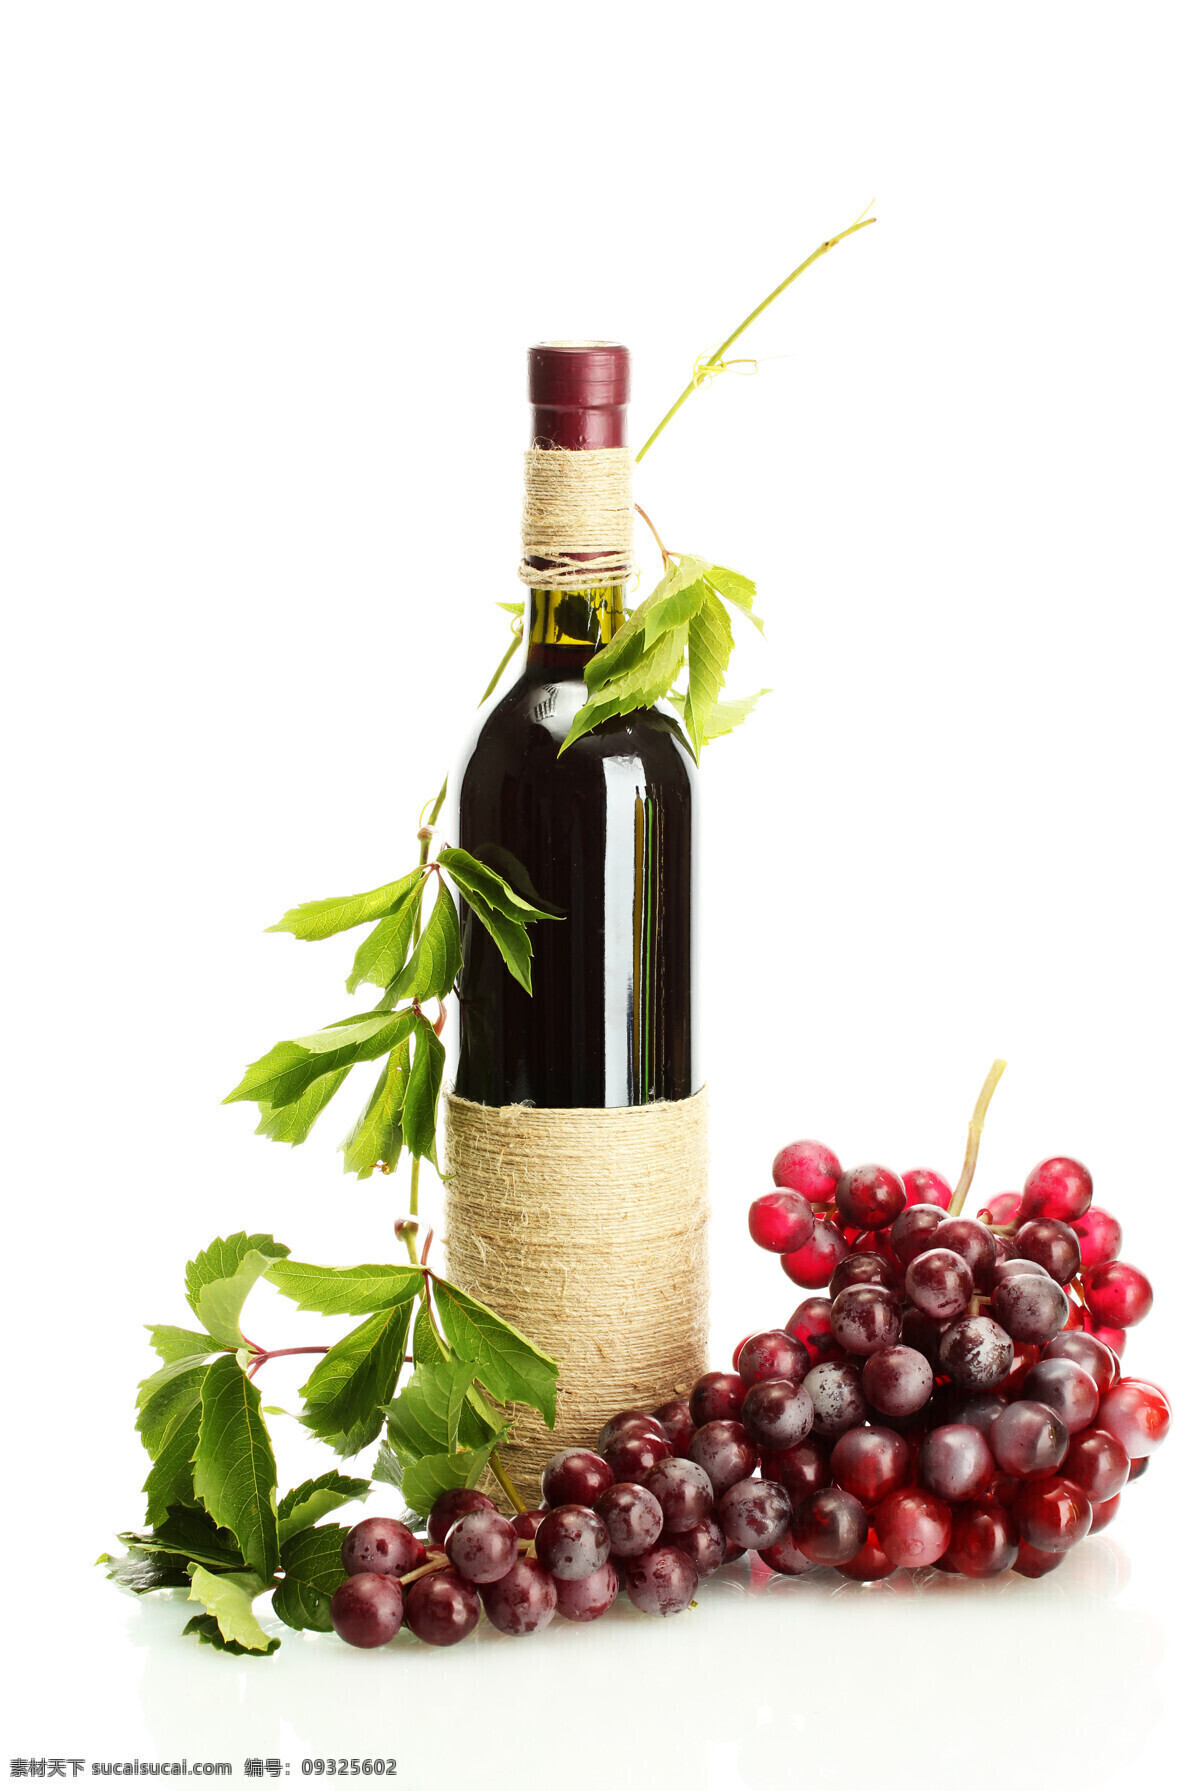 葡萄酒与葡萄 葡萄酒 葡萄 美酒 红酒 高档洋酒 生活用品 生活百科 白色